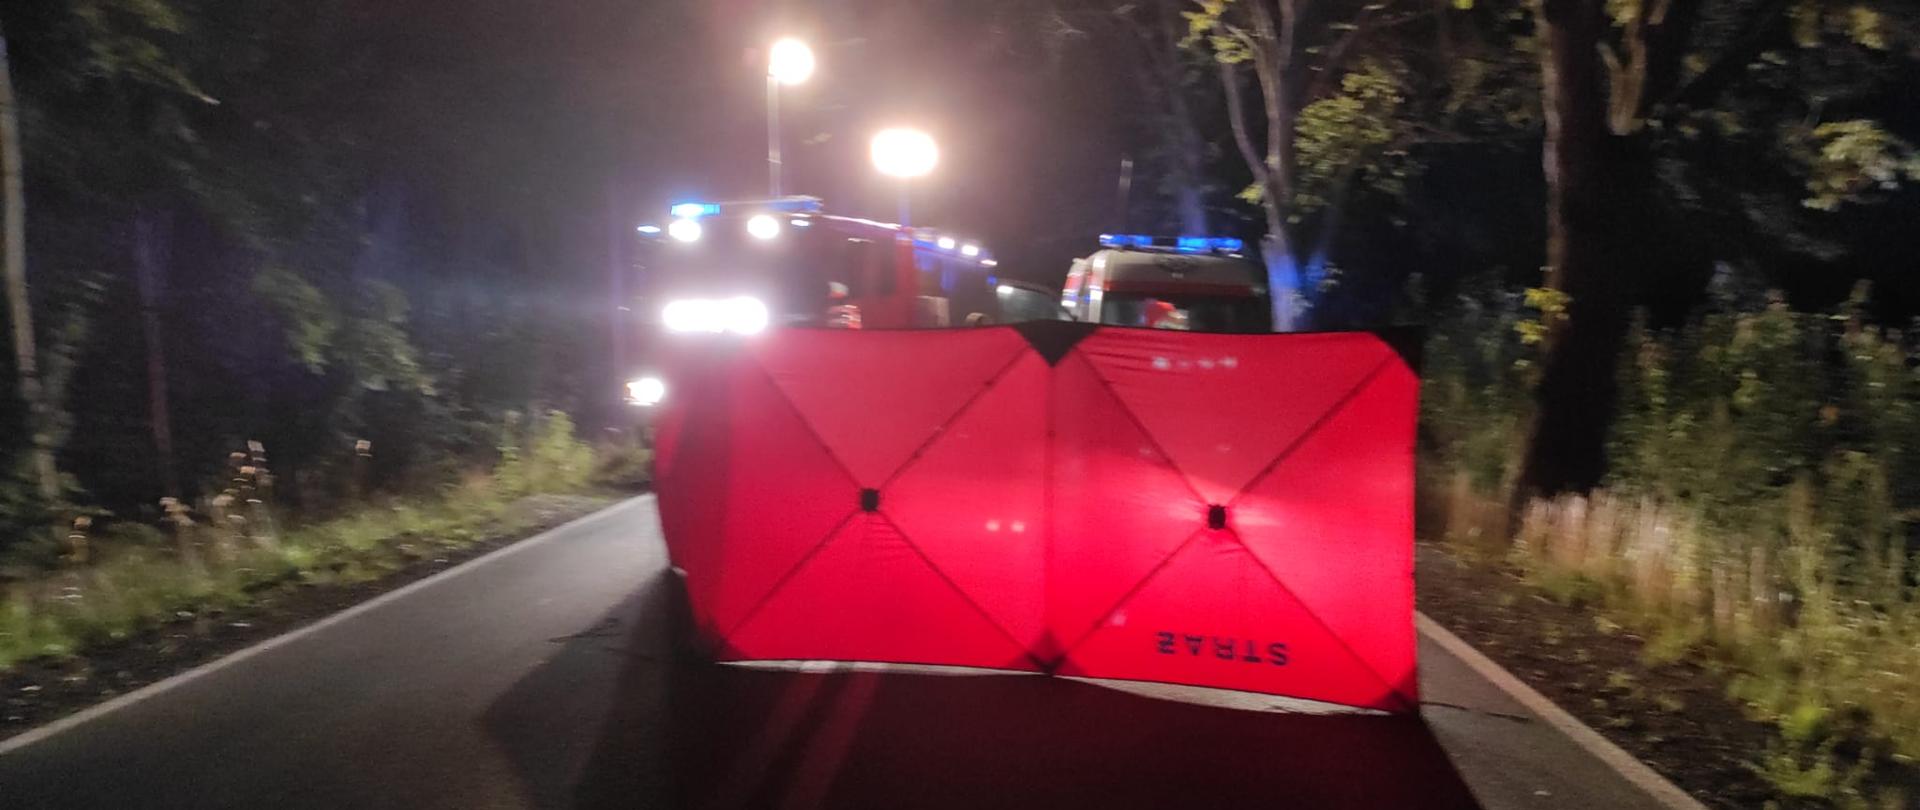 Zdjęcie zrobione nocą. Czerwony parawan na drodze. Światła samochodu strażackiego oświetlają miejsce zdarzenia.